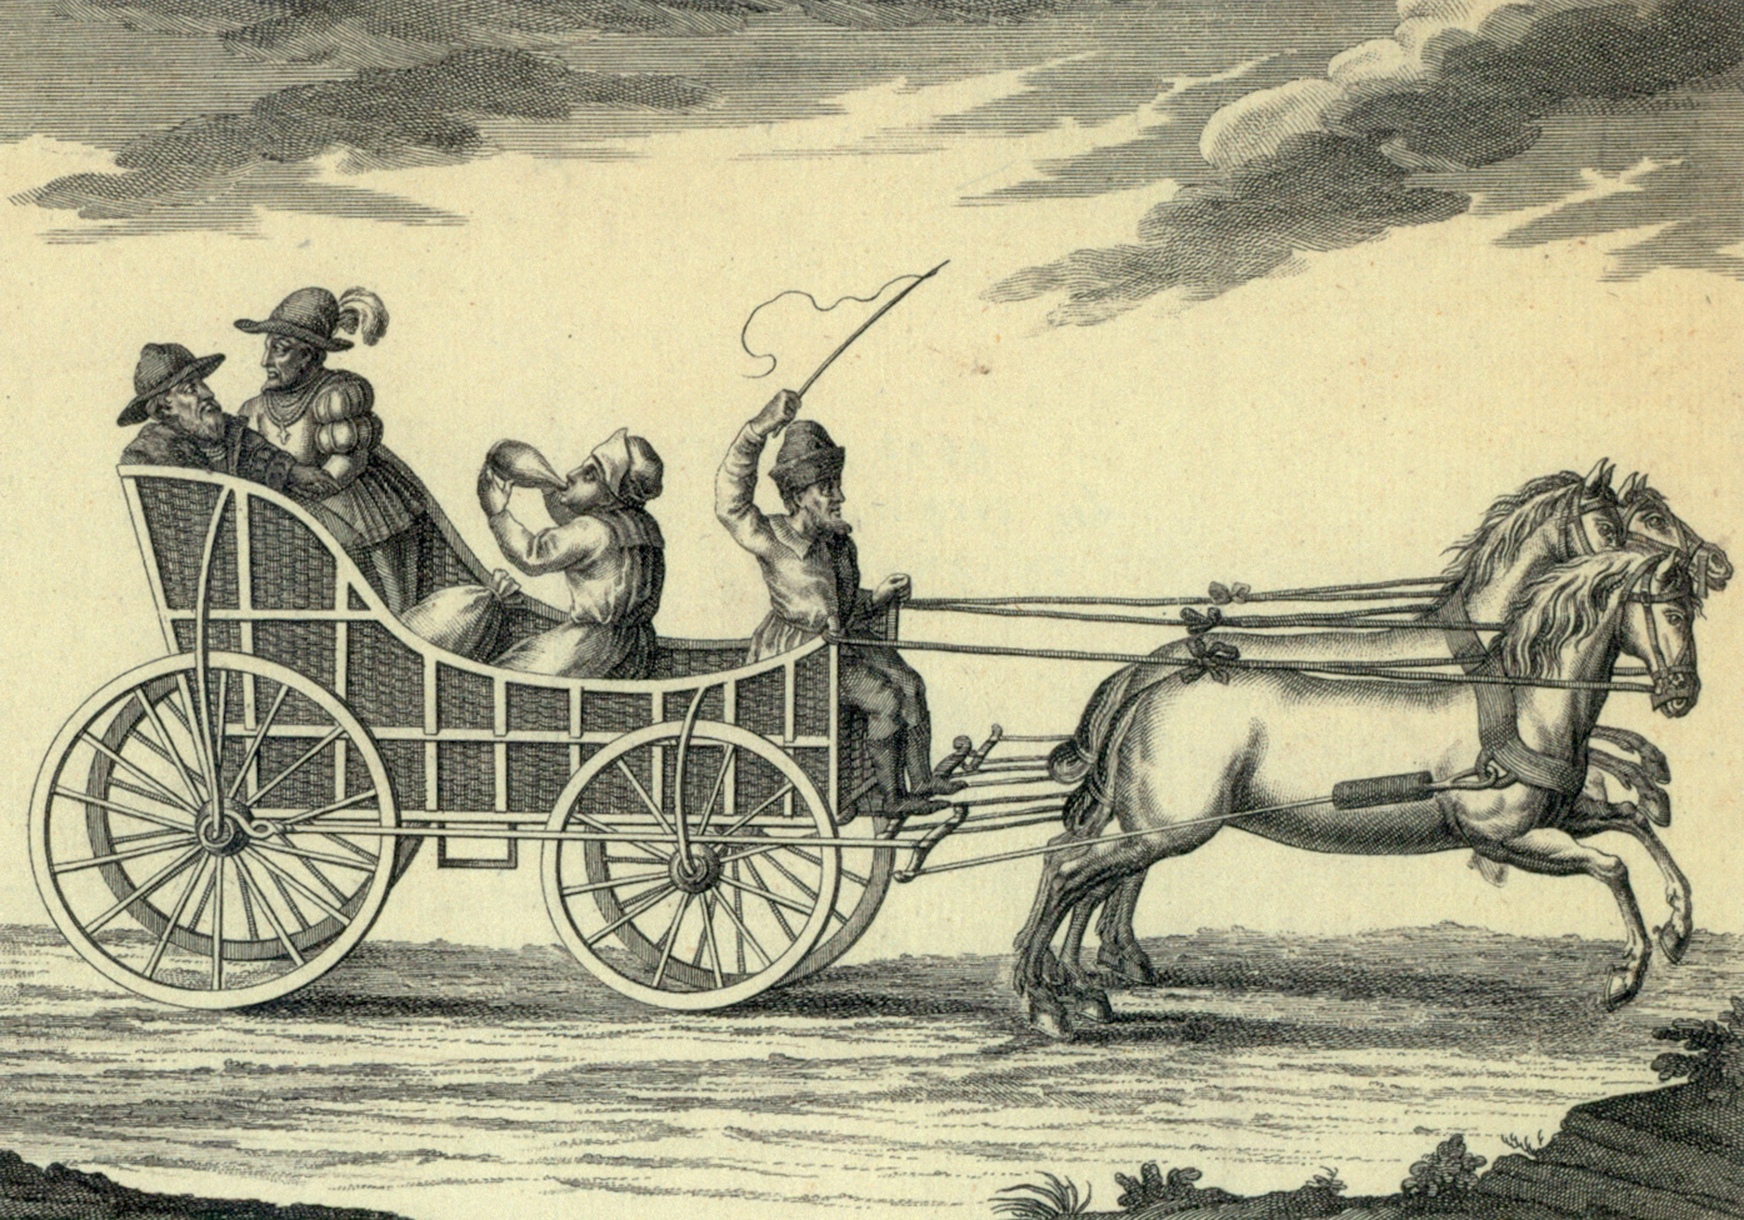 Oprindelsen for coach: En ungarnsk kocsi (hestevogn) fra Ungarn 1568